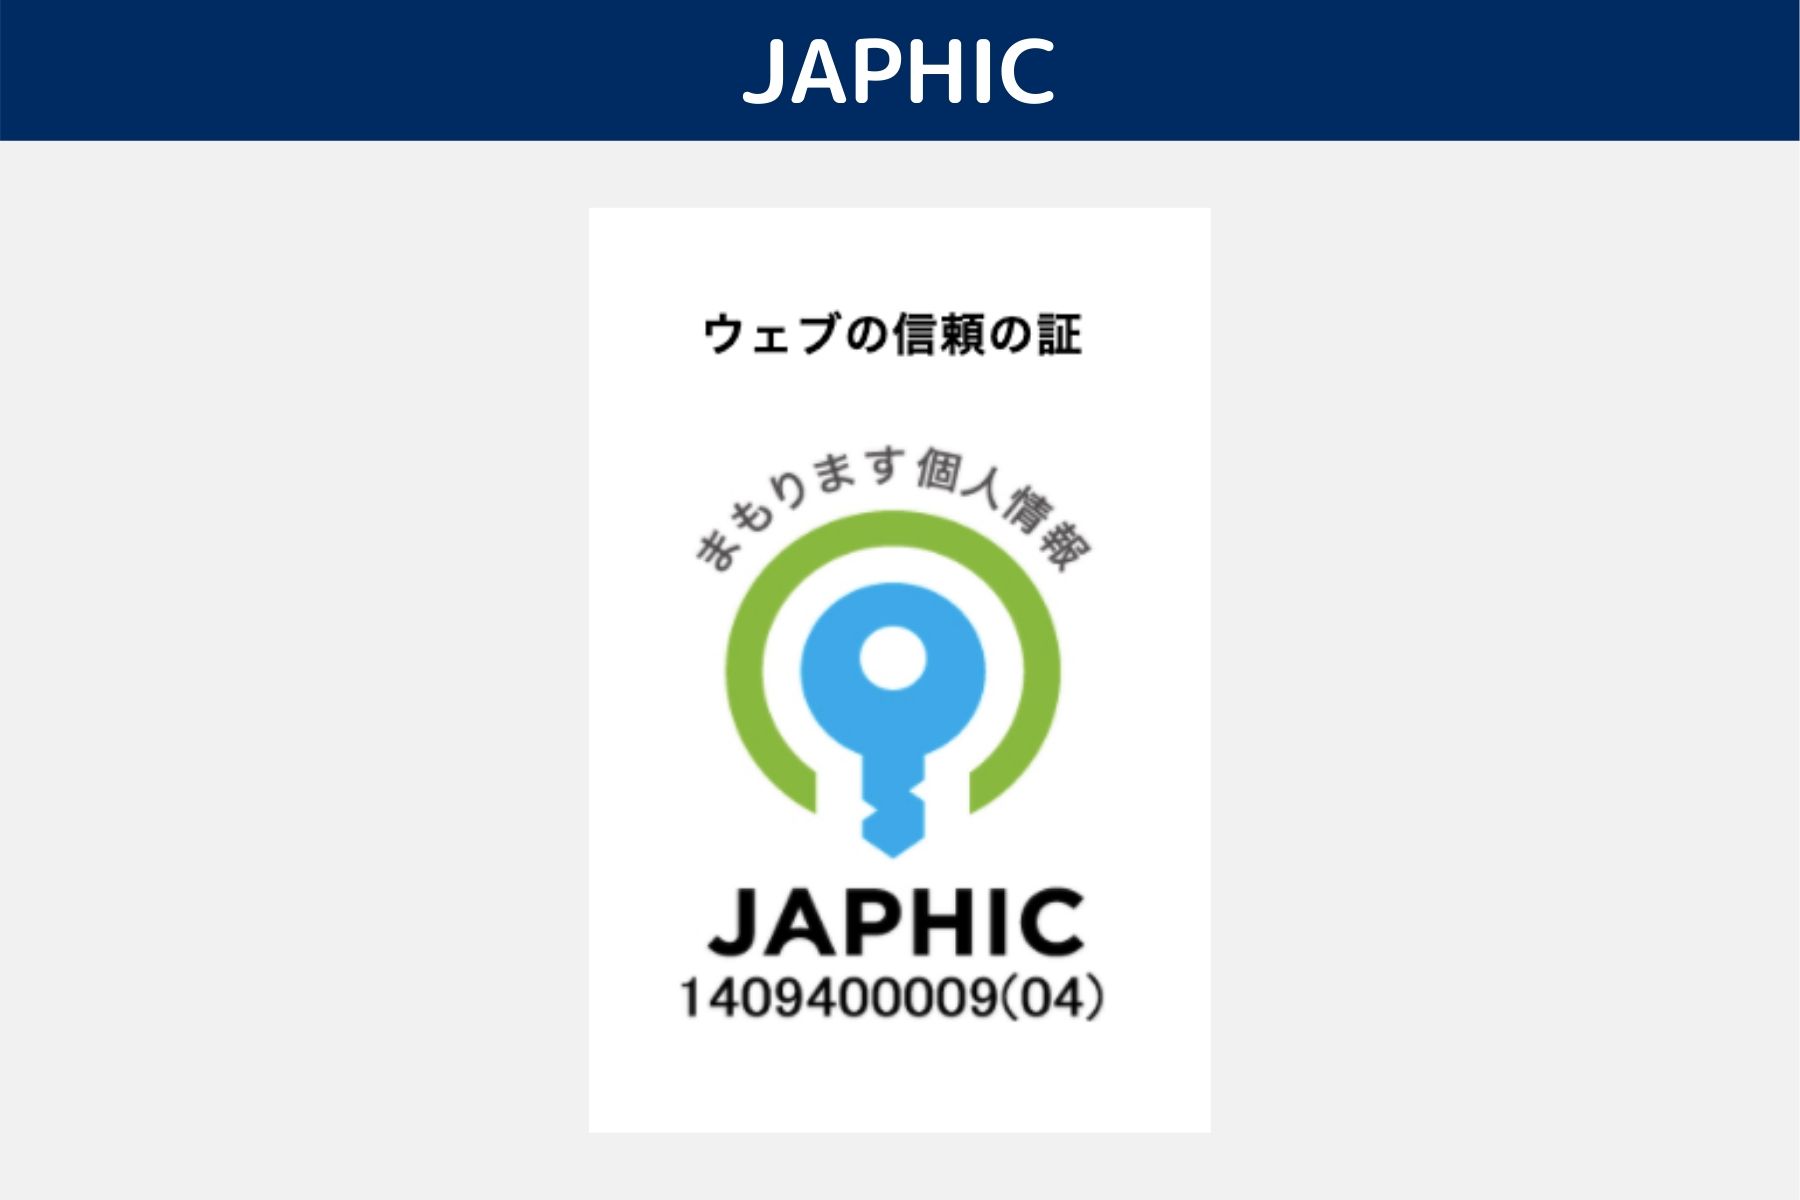 JAPHIC